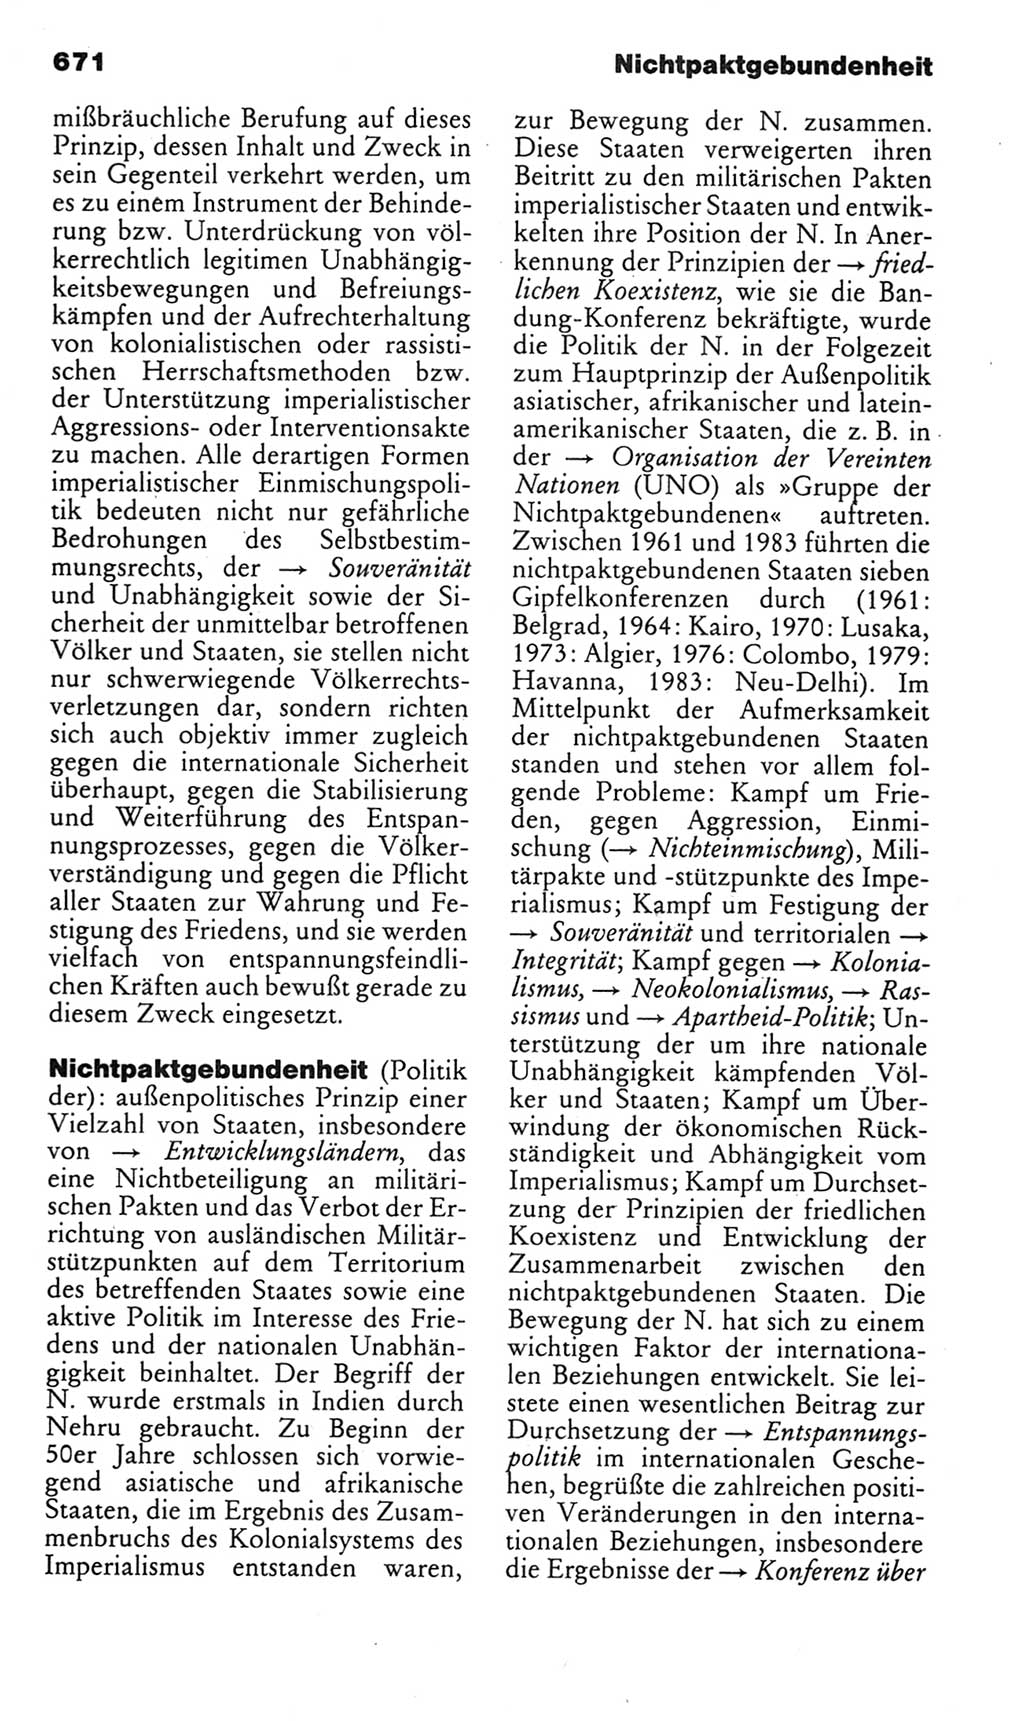 Kleines politisches Wörterbuch [Deutsche Demokratische Republik (DDR)] 1985, Seite 671 (Kl. pol. Wb. DDR 1985, S. 671)